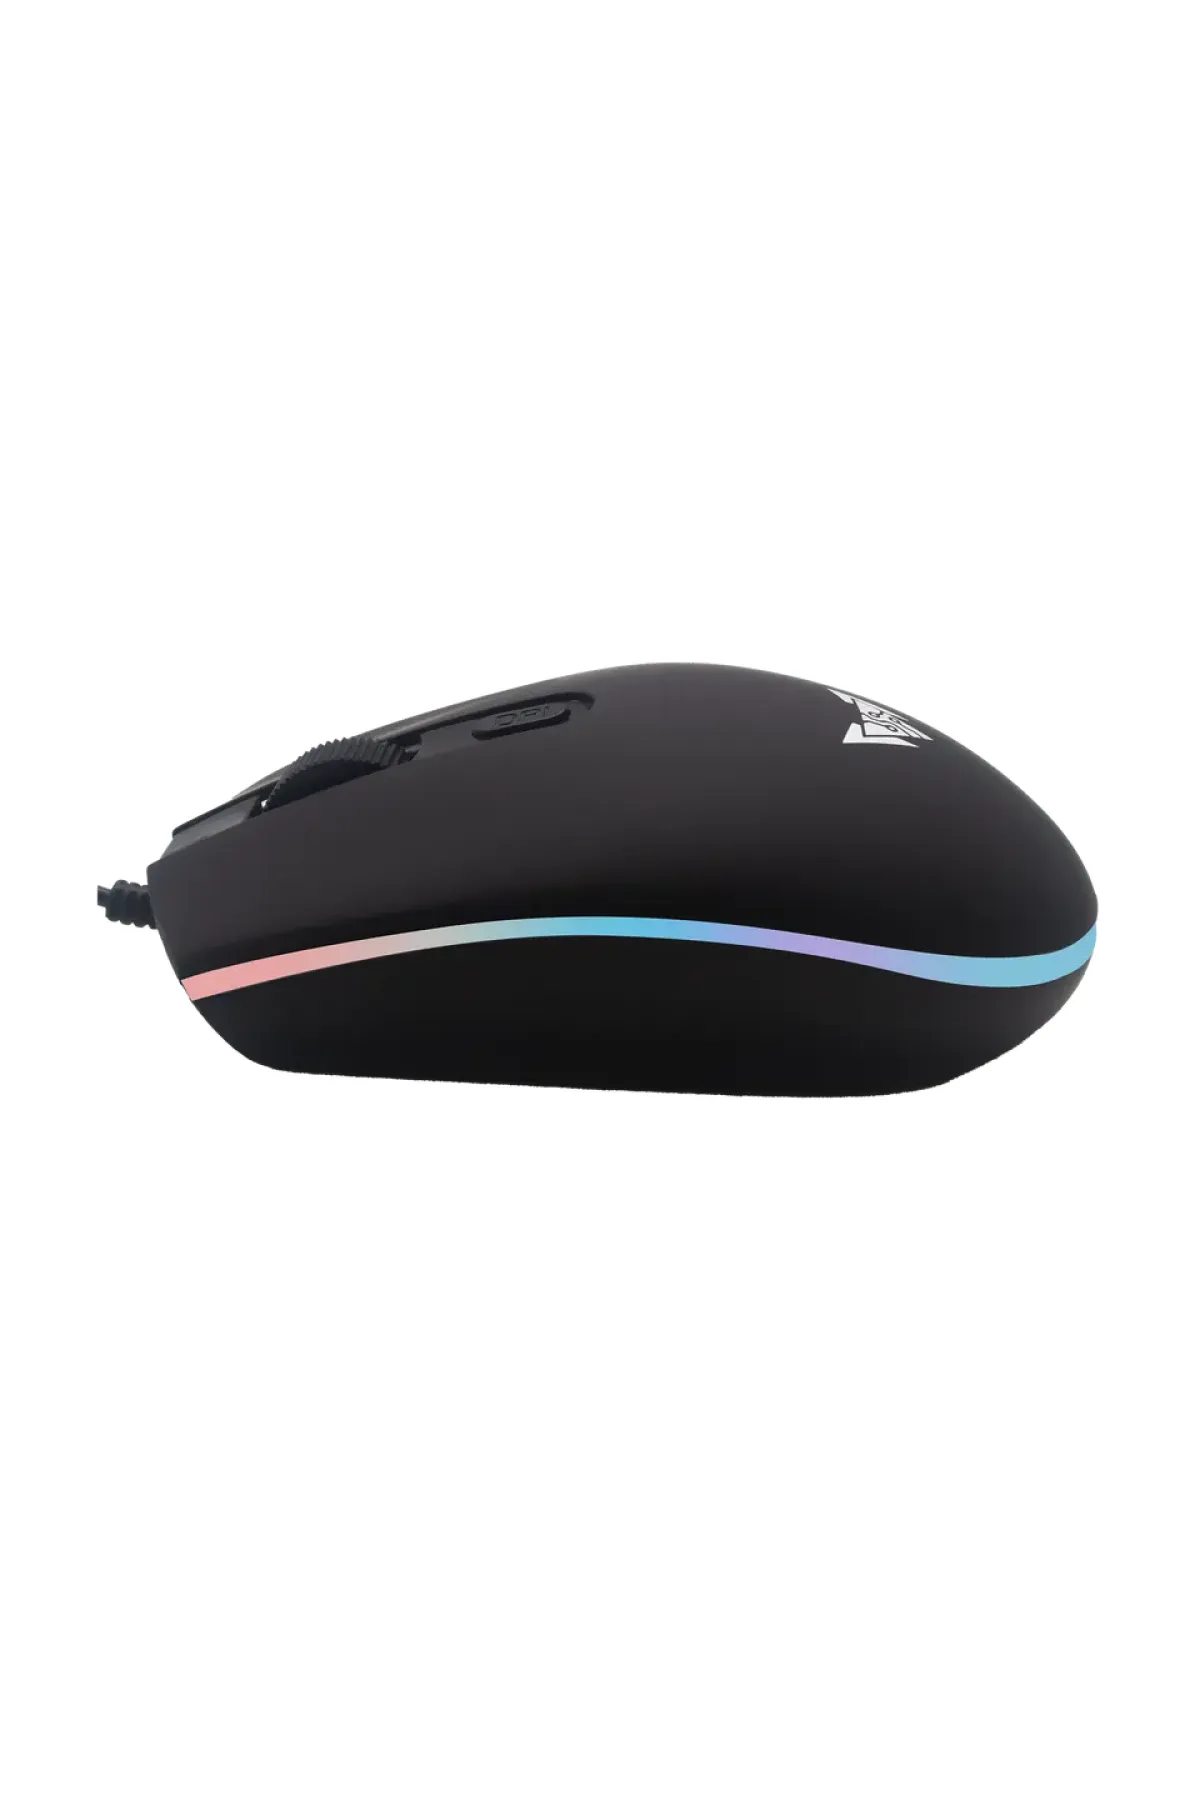 Crown Micro PULSAR RGB Aydınlatmalı Kablolu Usb Gaming & Ofis Mouse